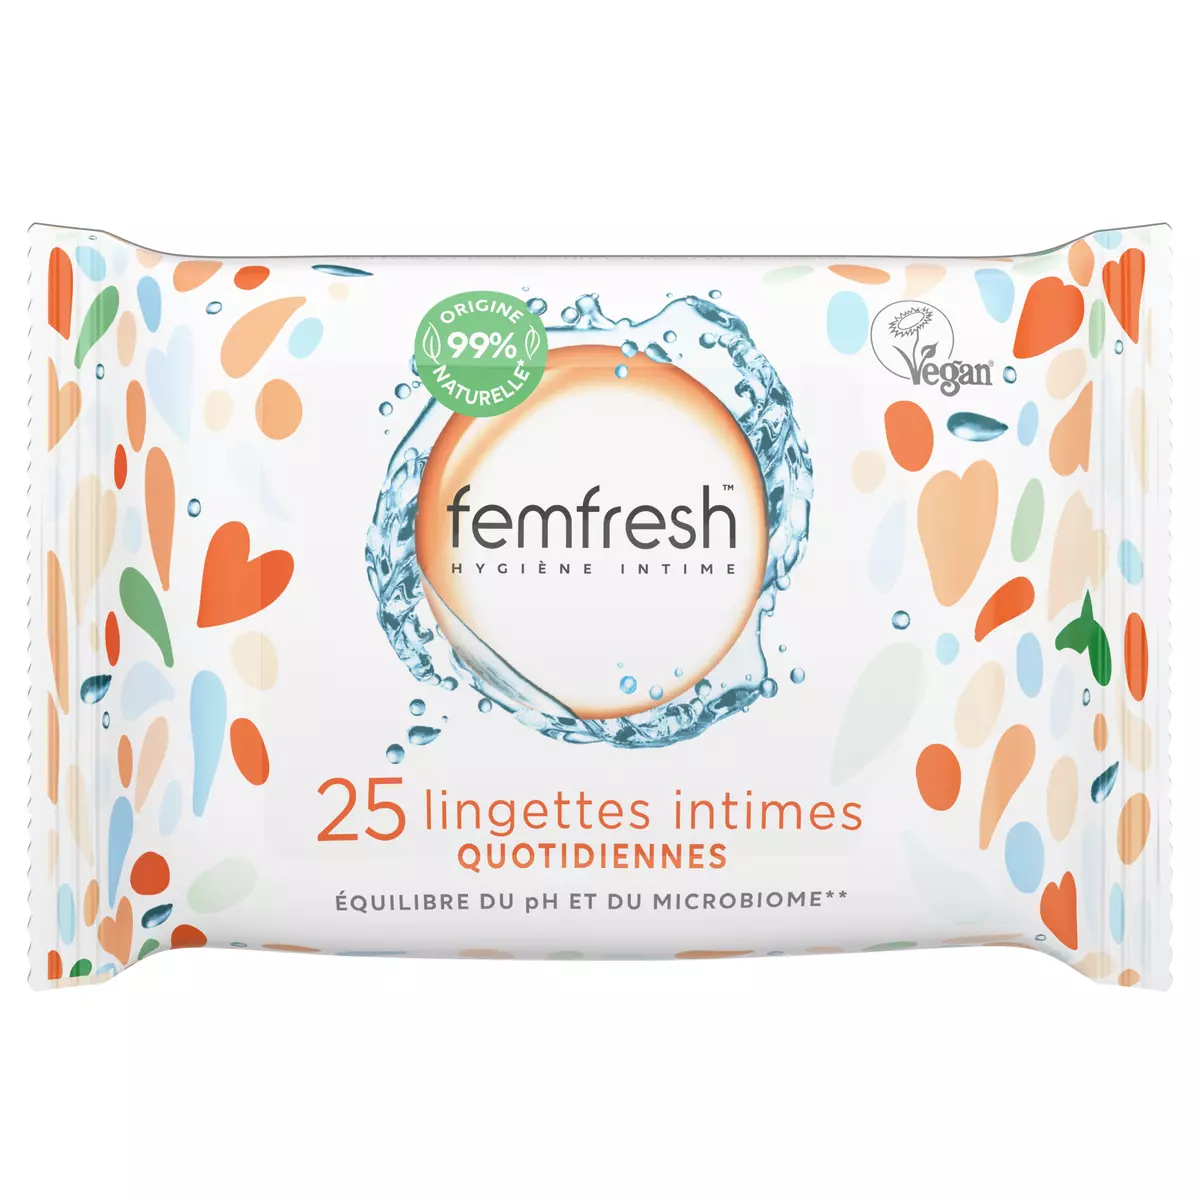 FEMFRESH Lingettes intimes quotidiennes 25 lingettes